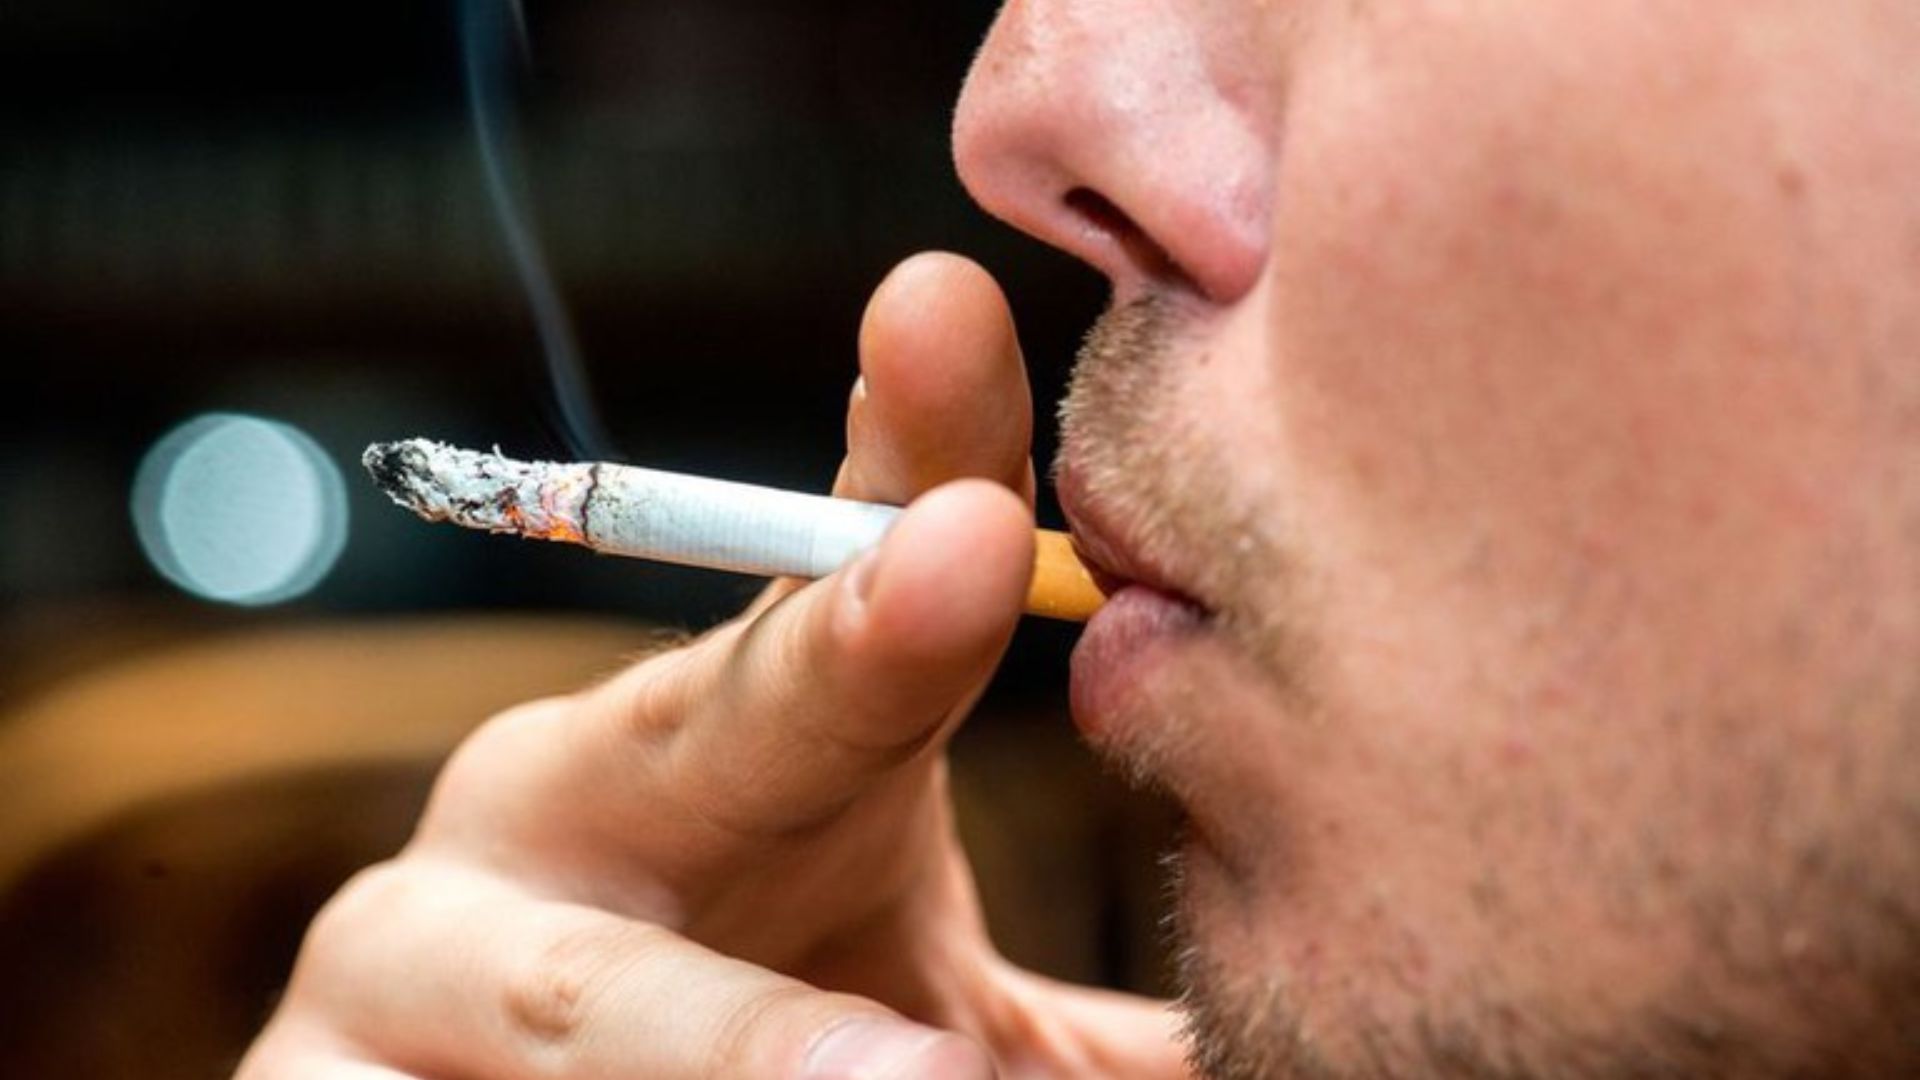 Governo propõe aumento de preço do cigarro. Foto: Reprodução/Gov.br